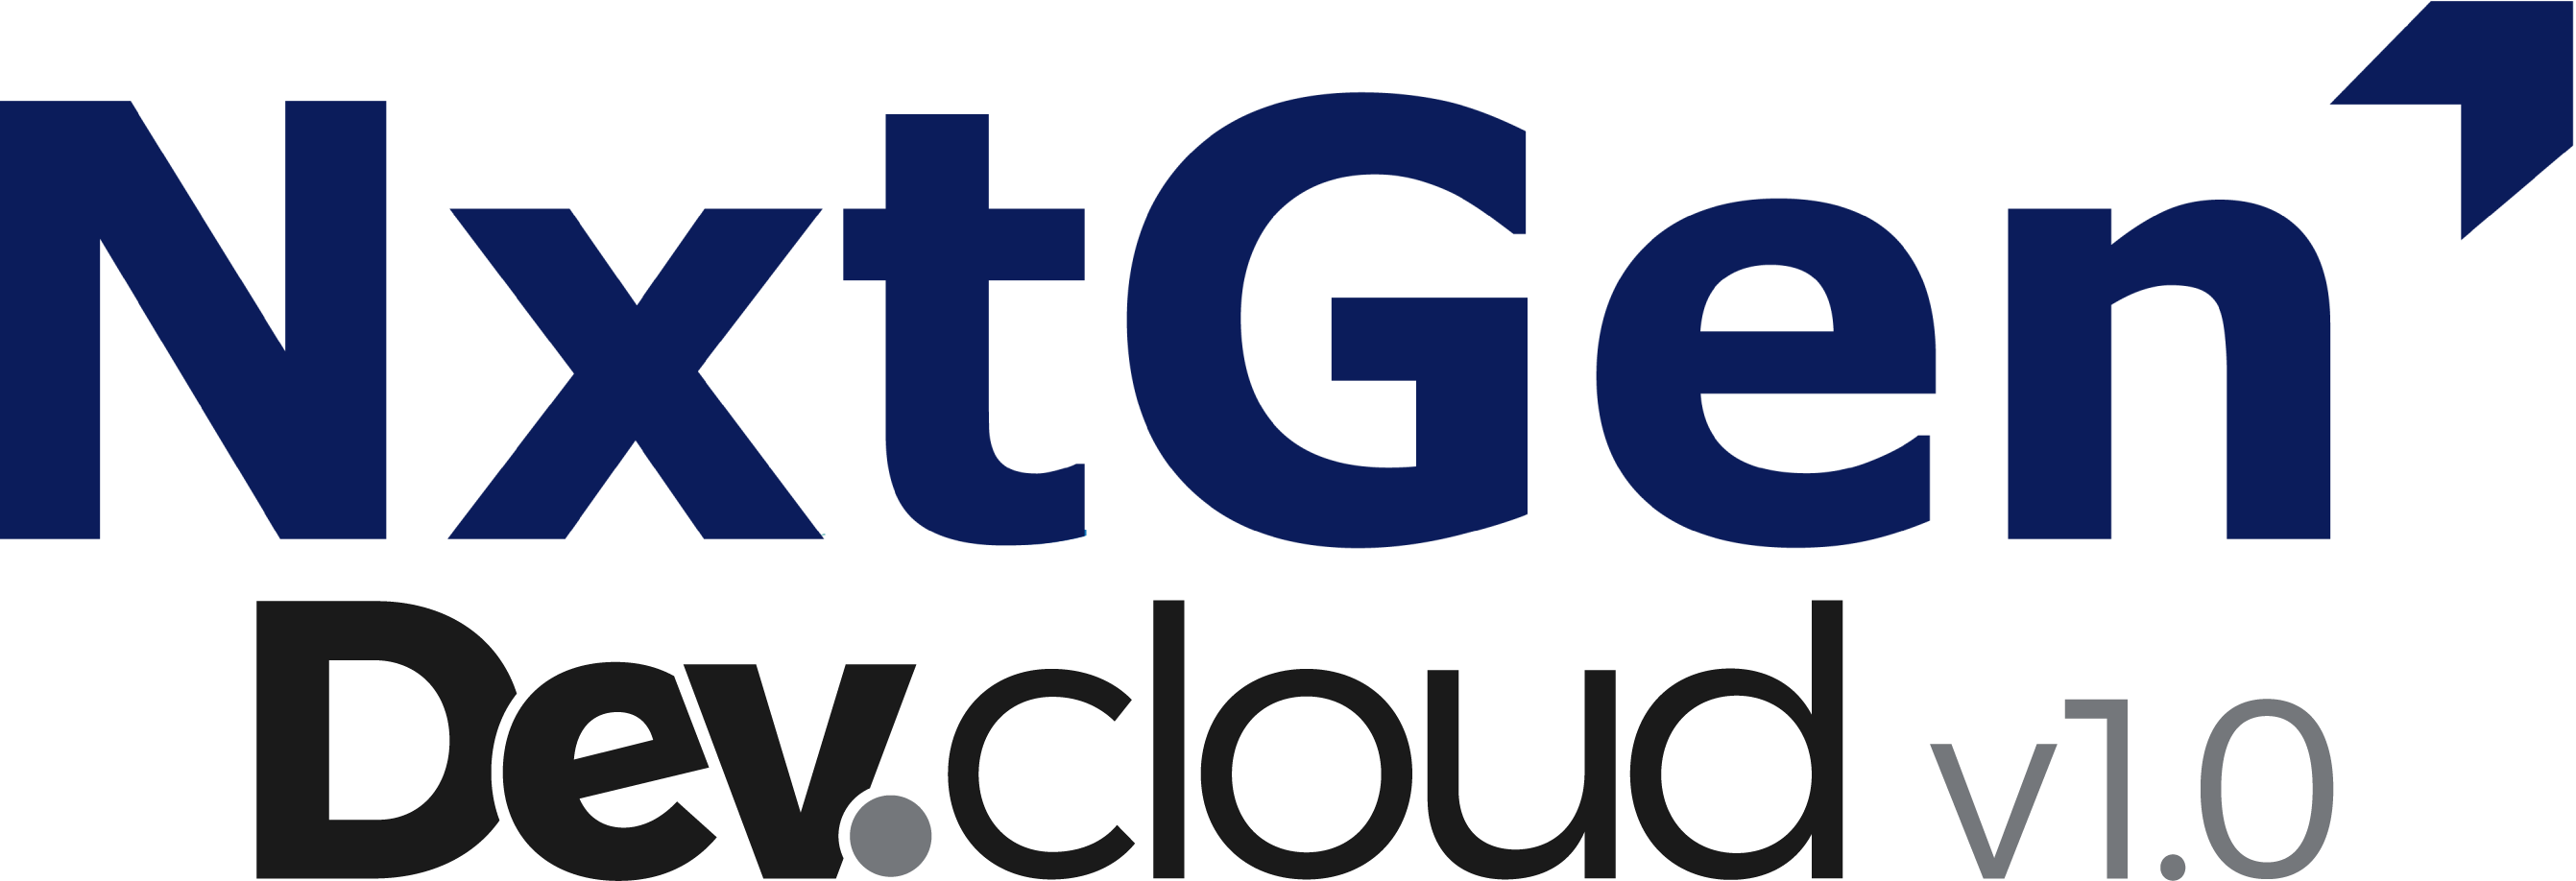 NxtGen Dev cloud logo